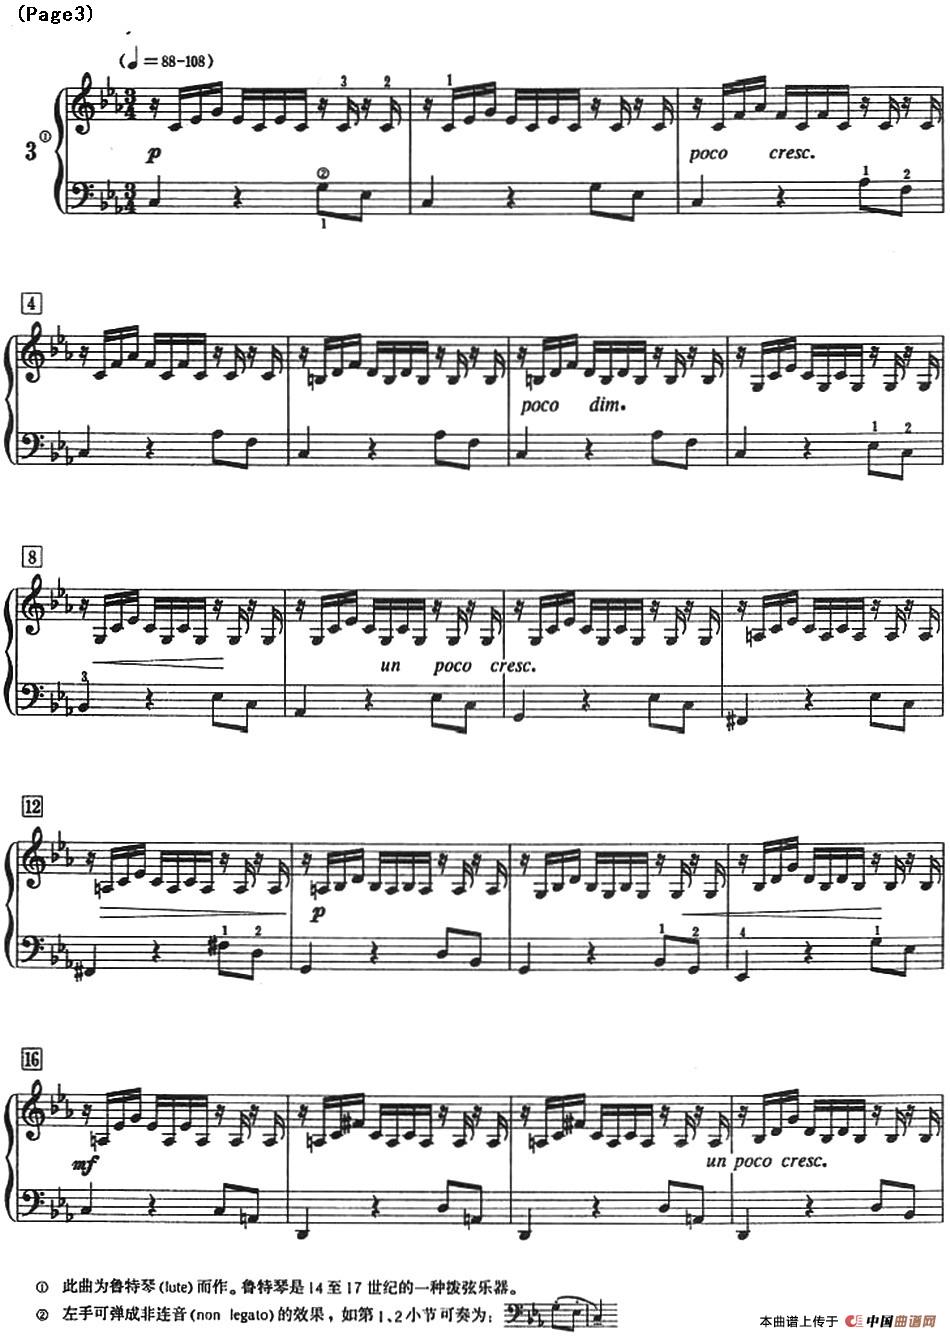 巴赫小前奏曲（NO.1-NO.4）(1)_Bach Little Prelude and Fugue_页面_08.jpg